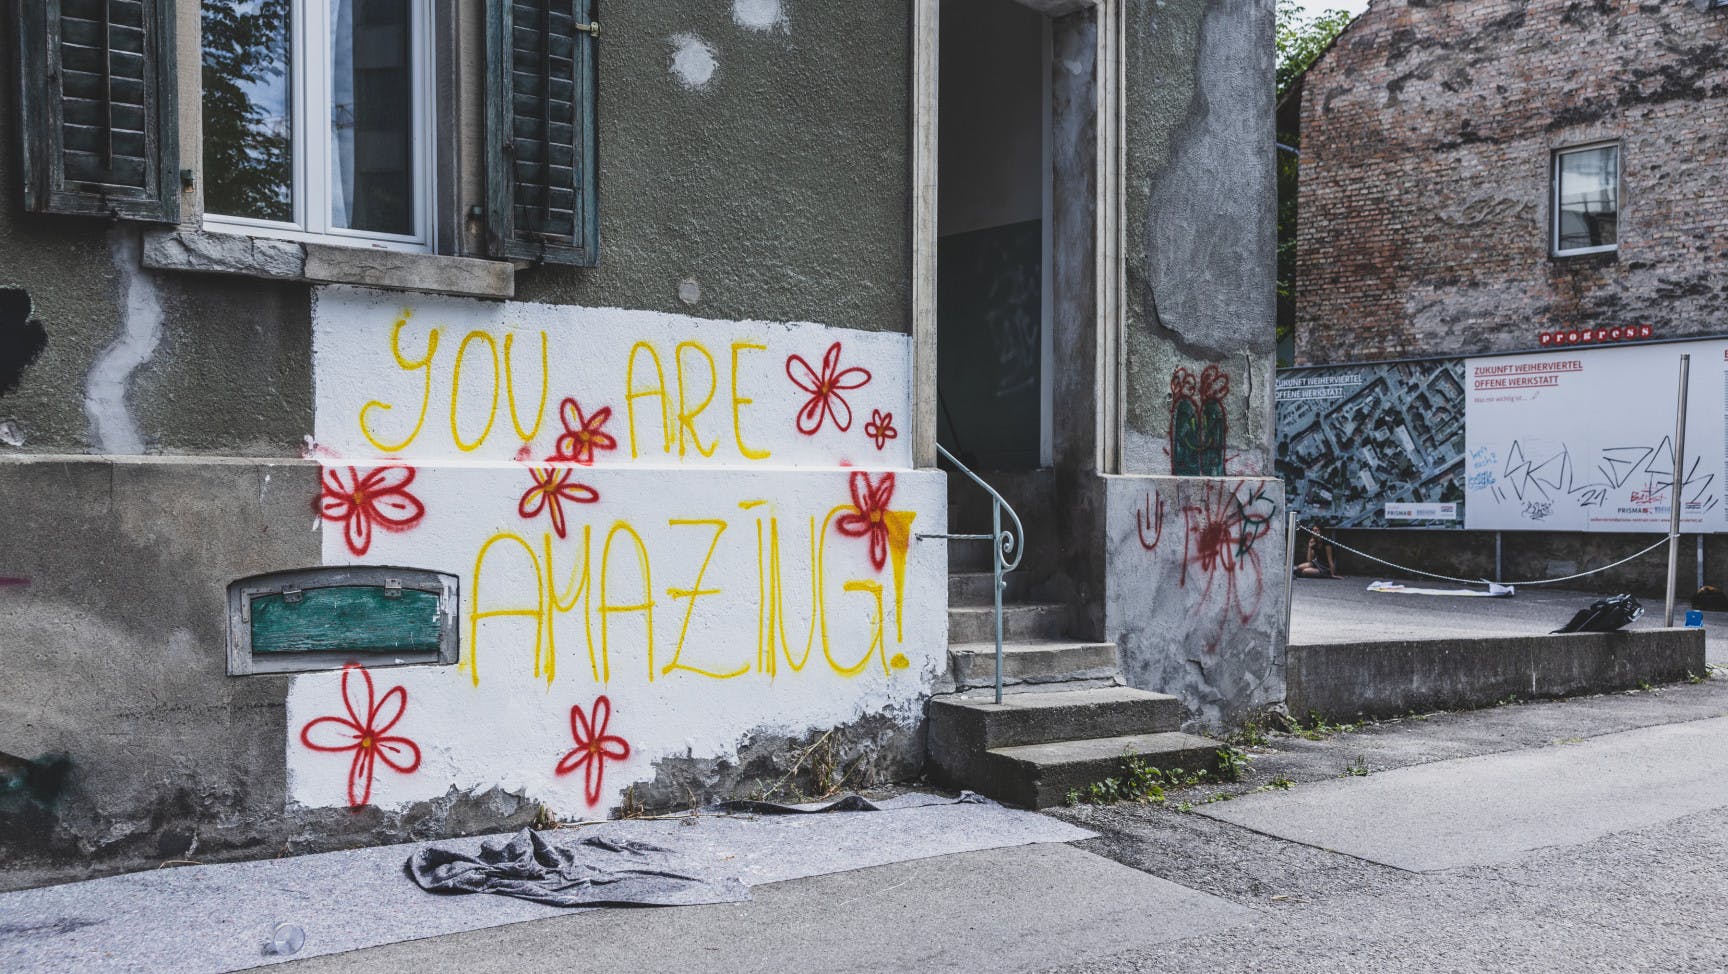 Auf einer Hauswand steht "you are amazing".